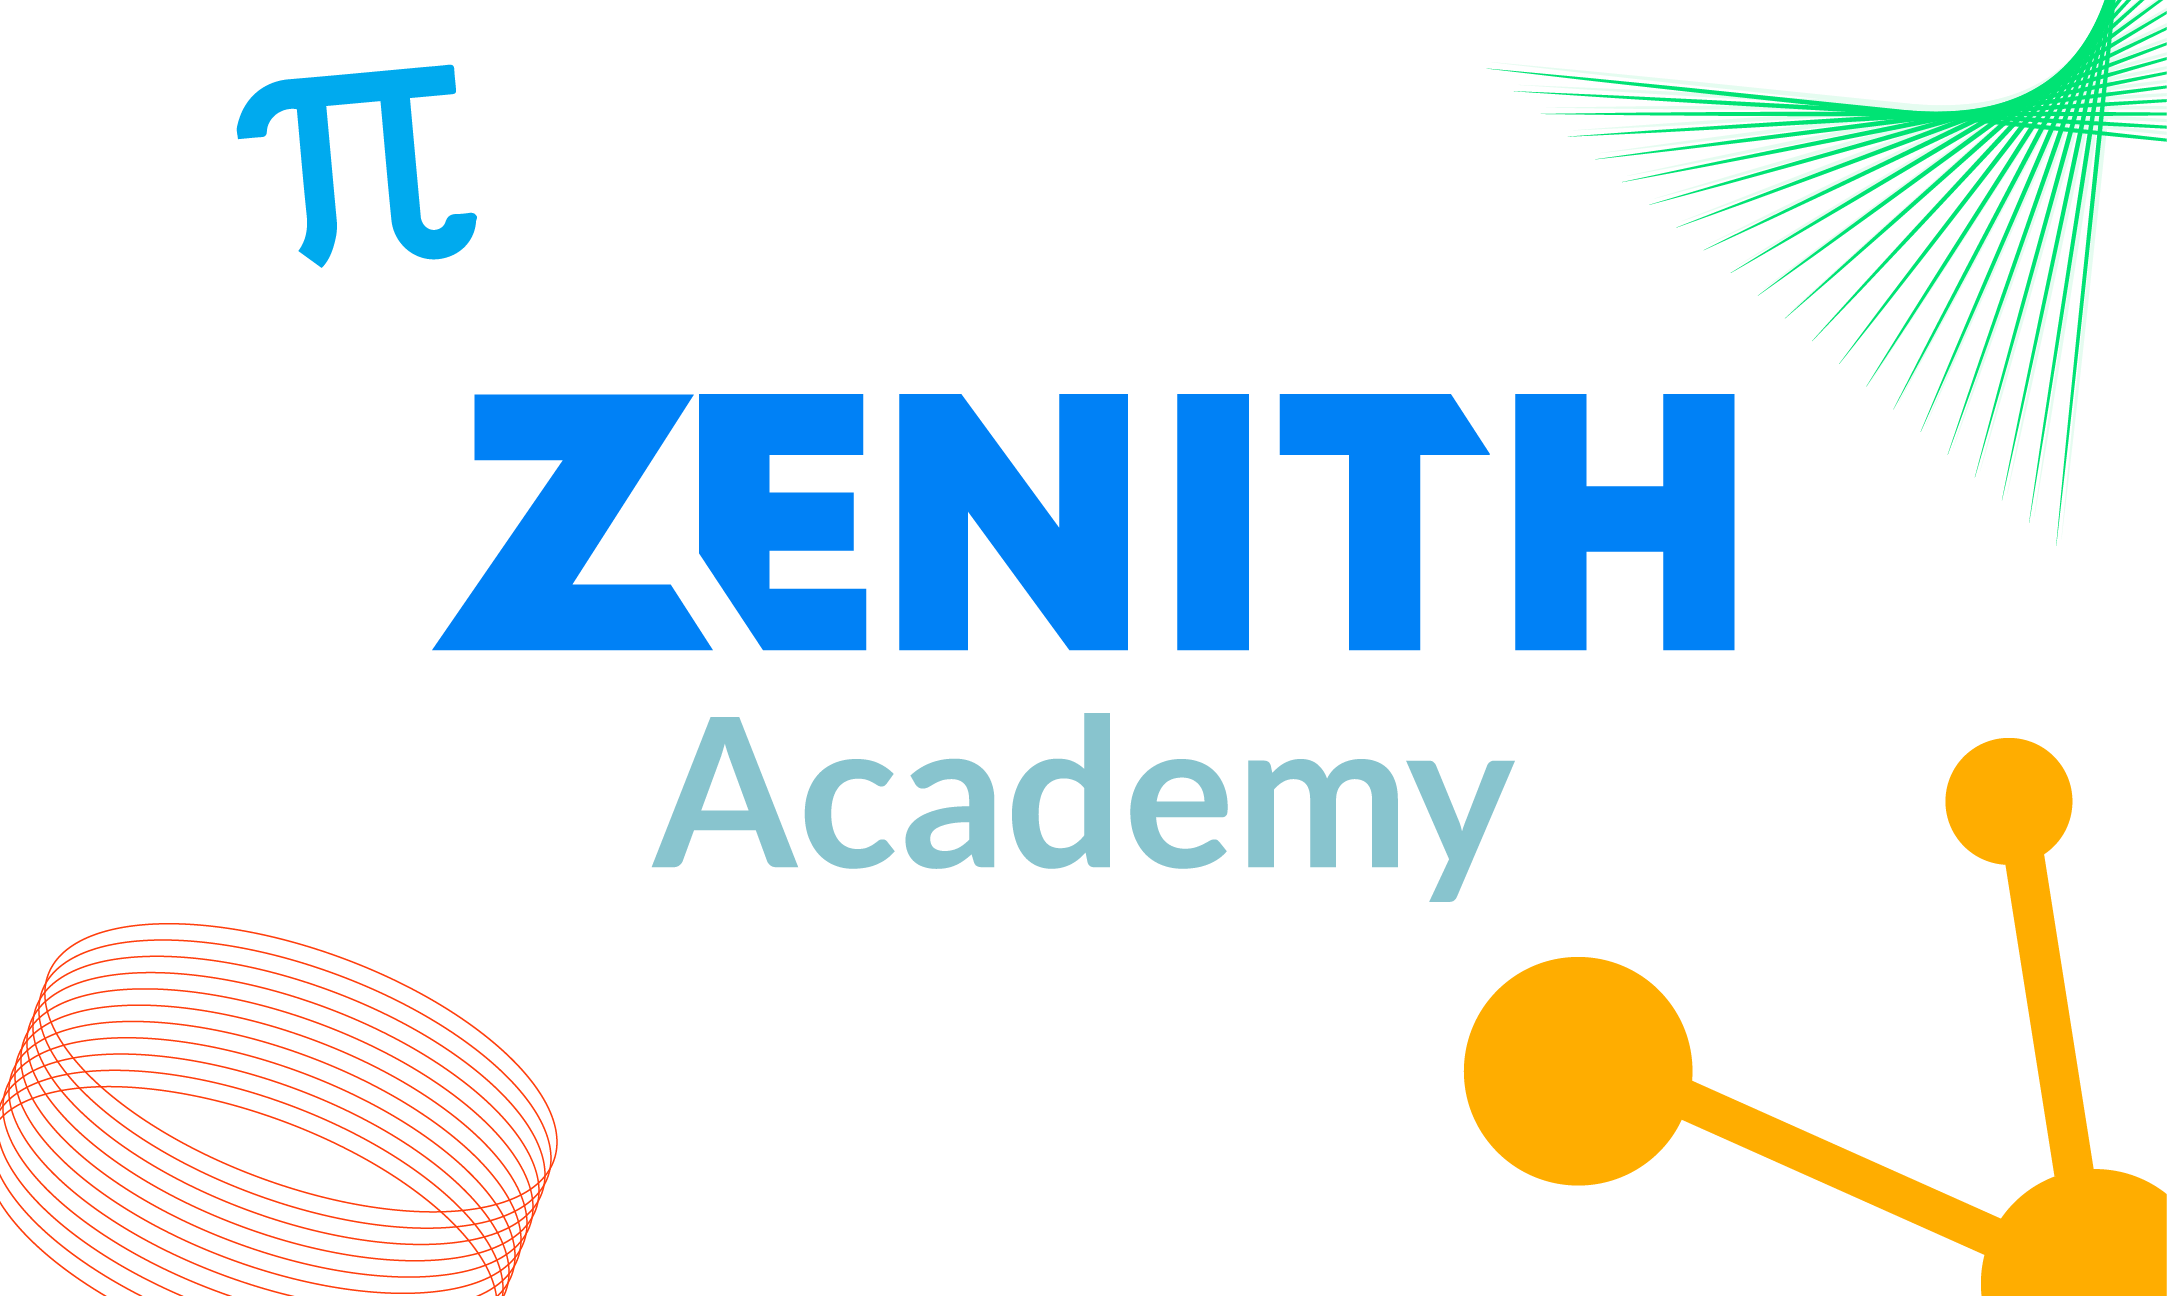 Zenith Academy